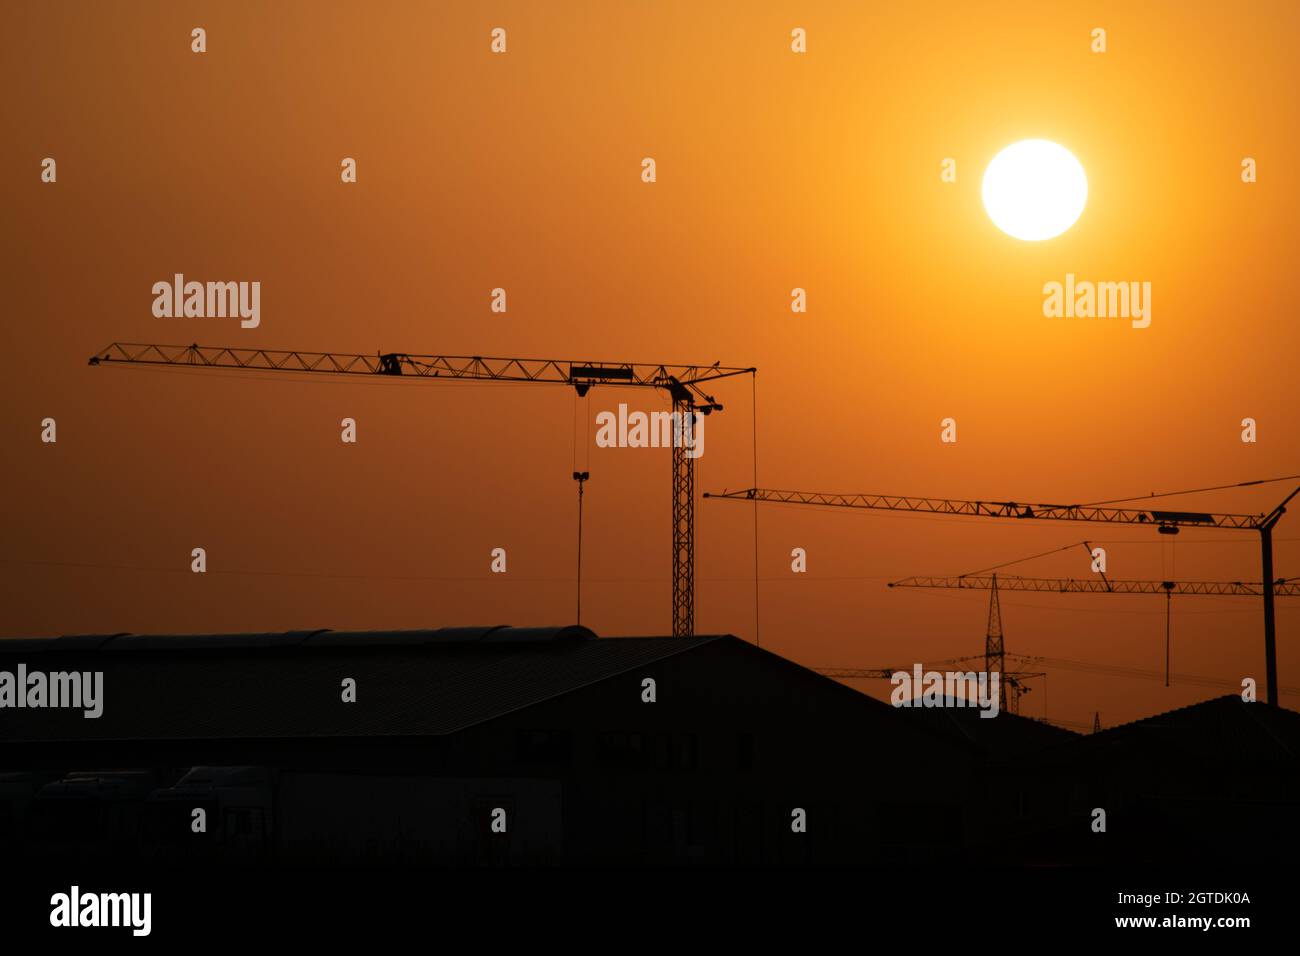 Niedrigen Winkel Blick auf Silhouette Kran gegen Himmel bei Sonnenuntergang Stockfoto